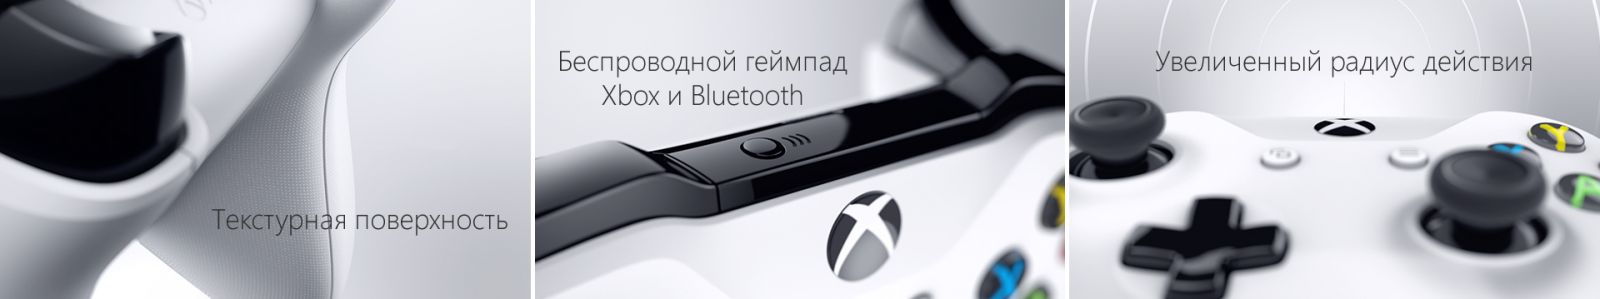 Xbox One S 1TB image7